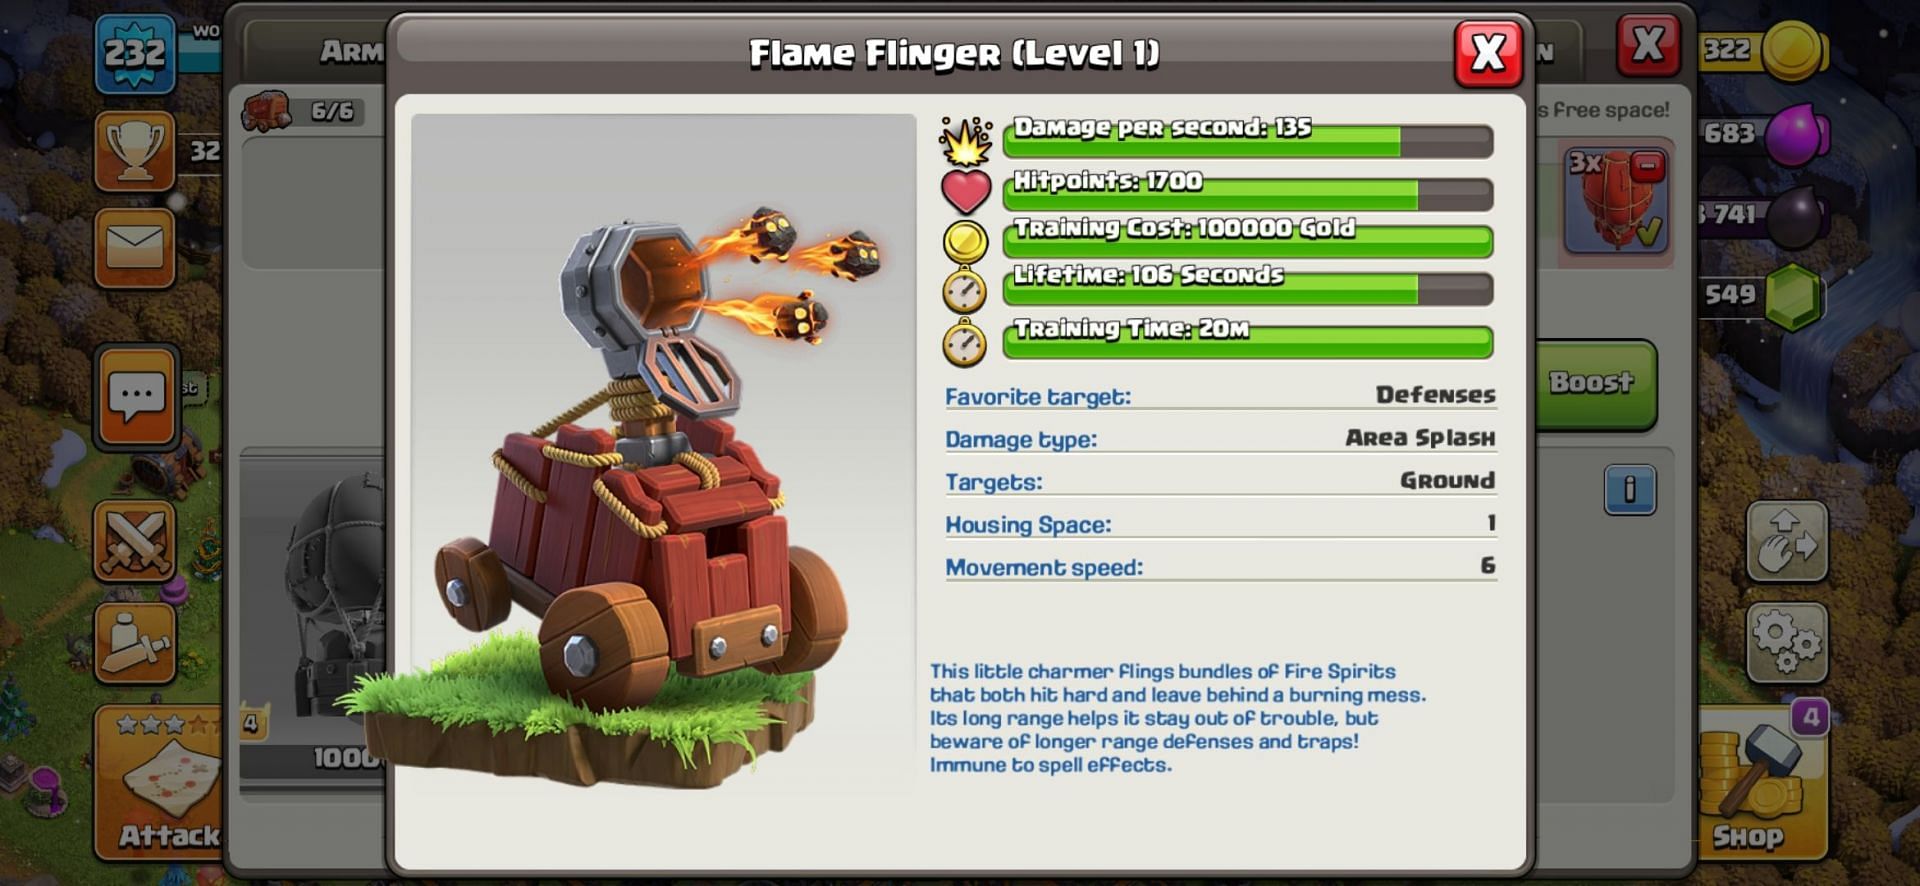 The Flame Flinger in Clash of Clans (Image via Sportskeeda)